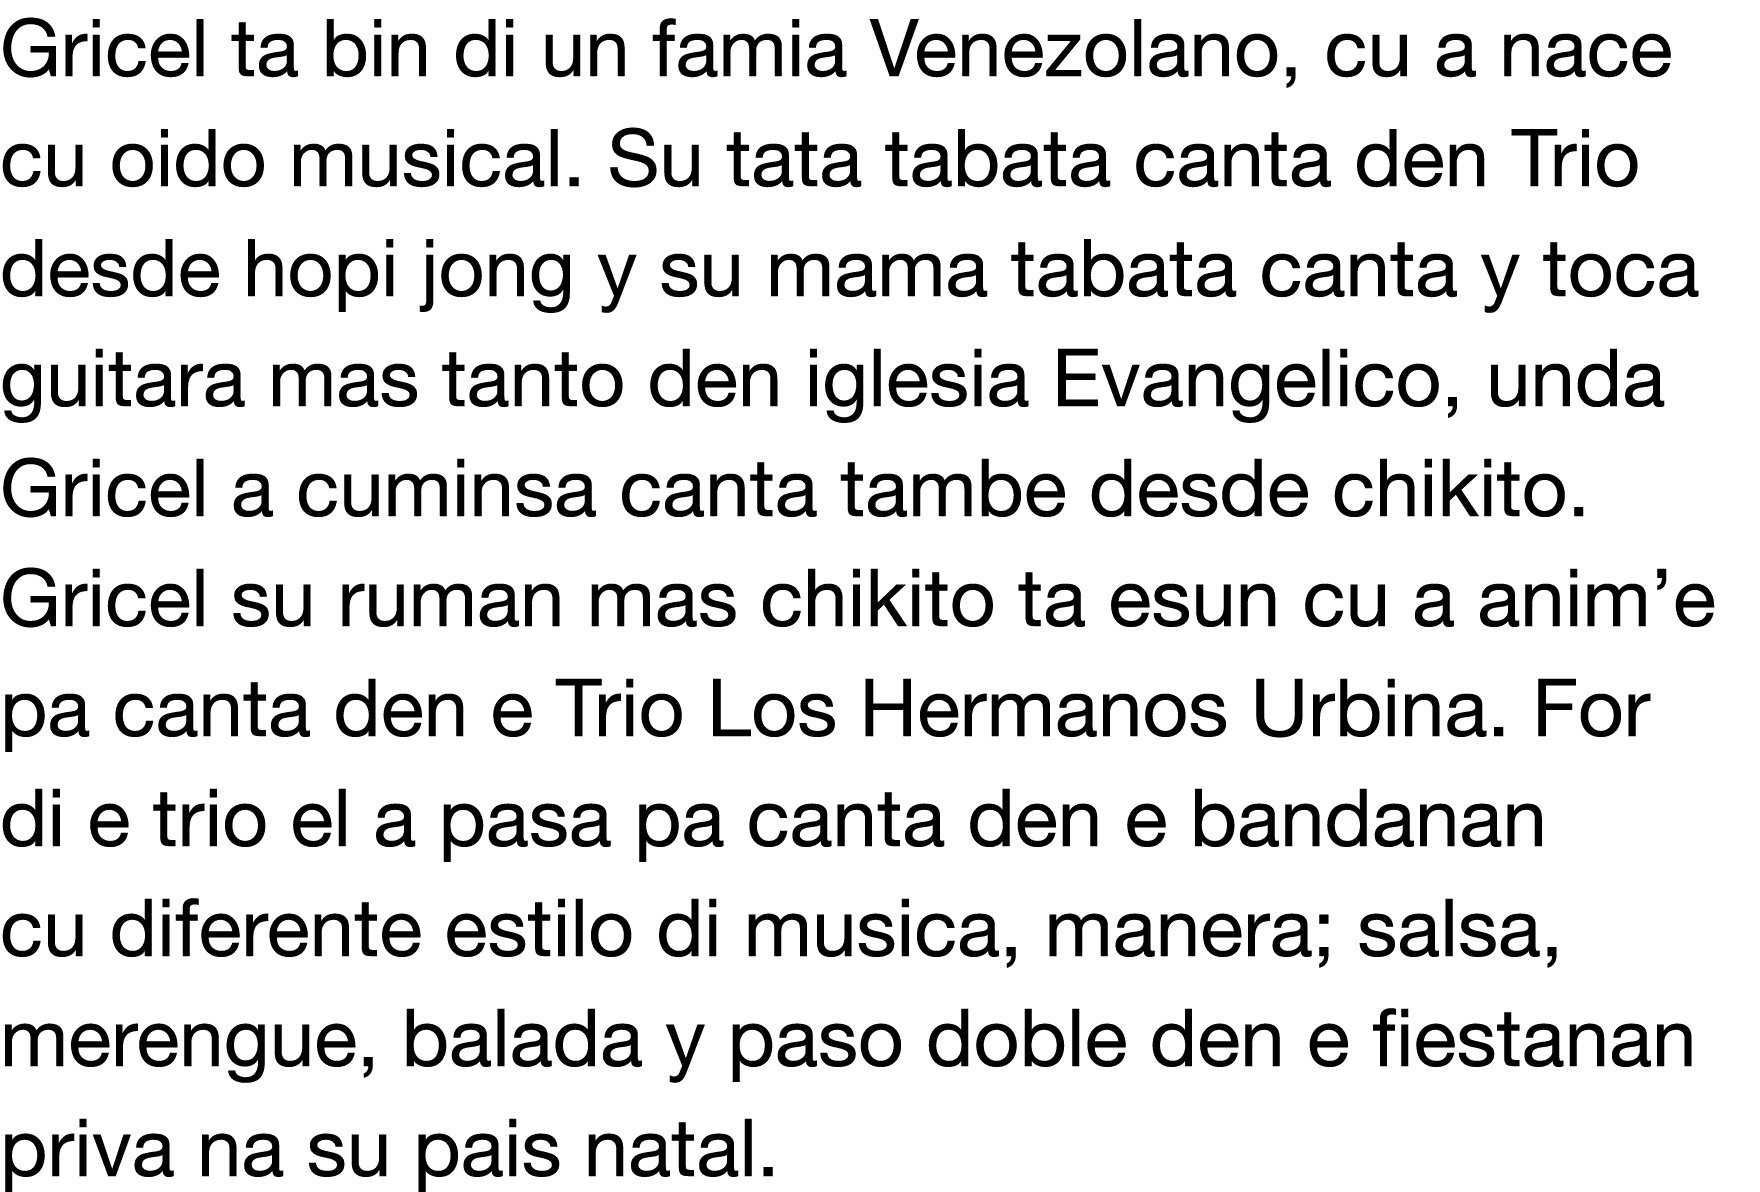 Gricel ta bin di un famia Venezolano, cu a nace cu oido musical  Su tata tabata canta den Trio desde hopi jong y su m   